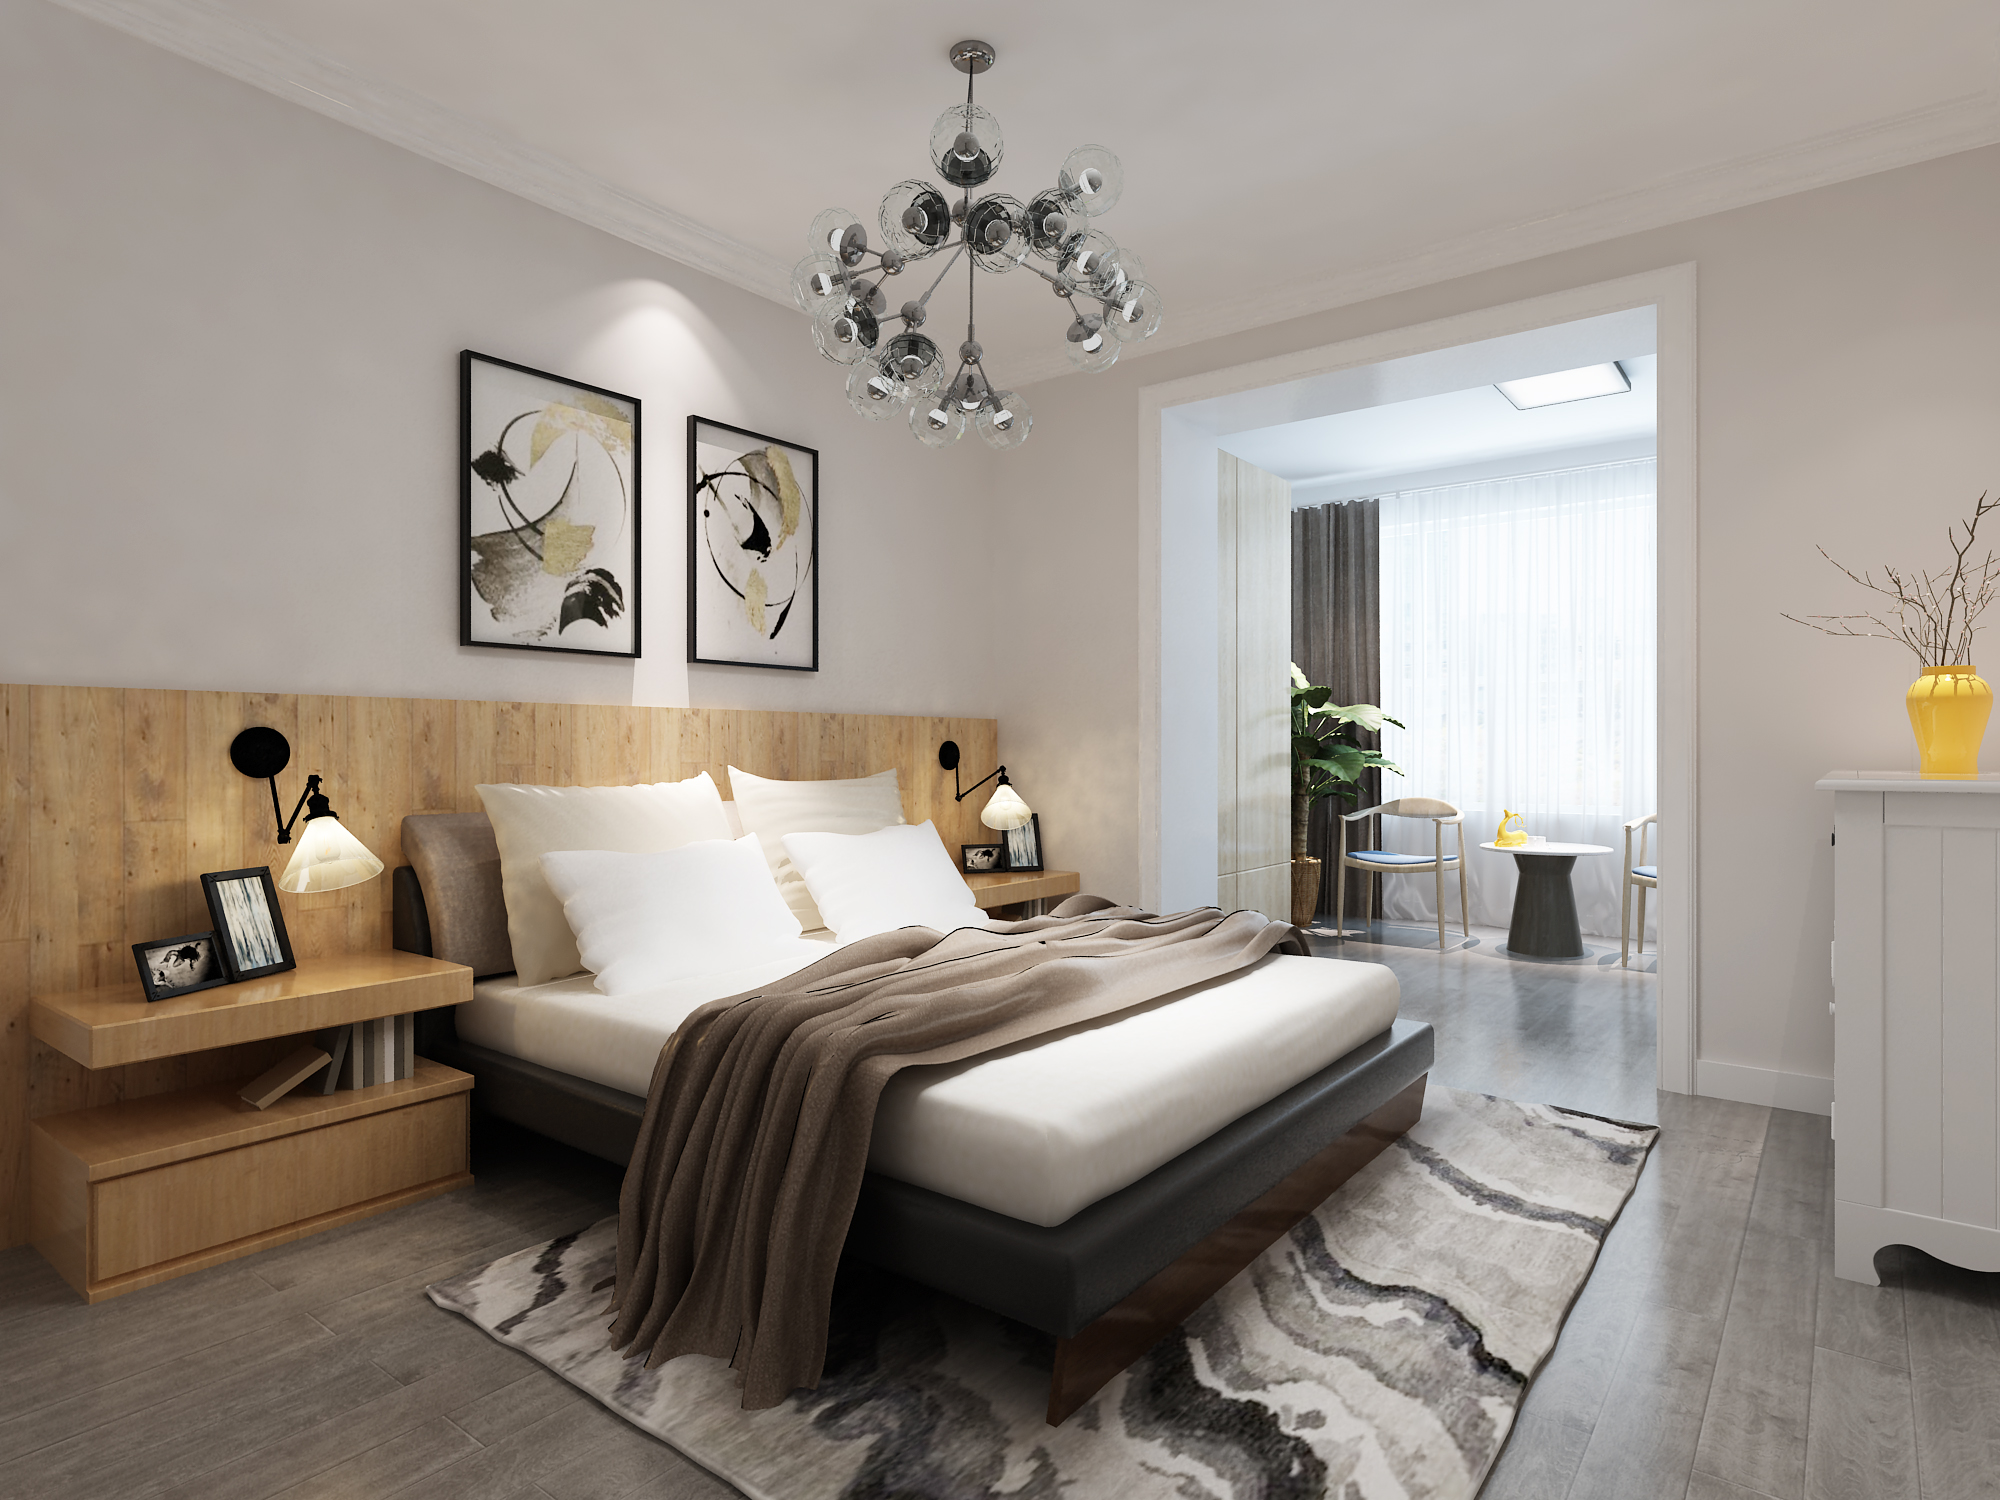 卧室装修选择铺木地板 温馨又大方 - 装修保障网